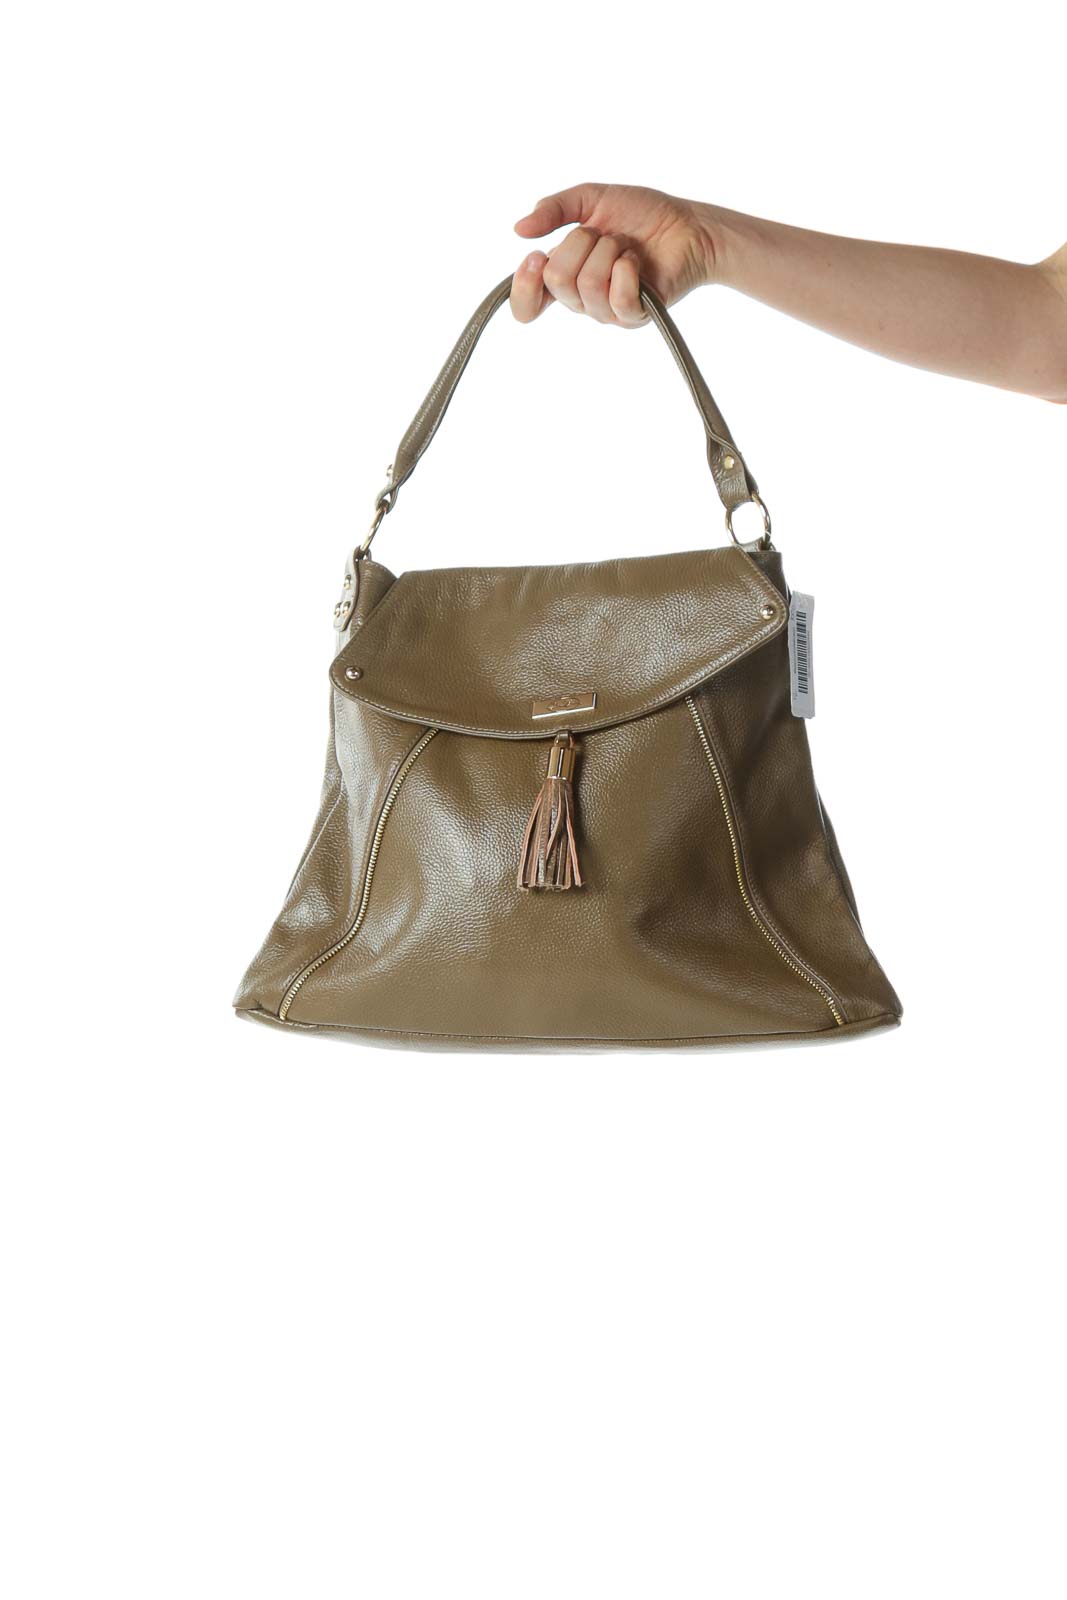 Onna Ehrlich - Olive Designer Tassel Shoulder Bag with Zipper and ...